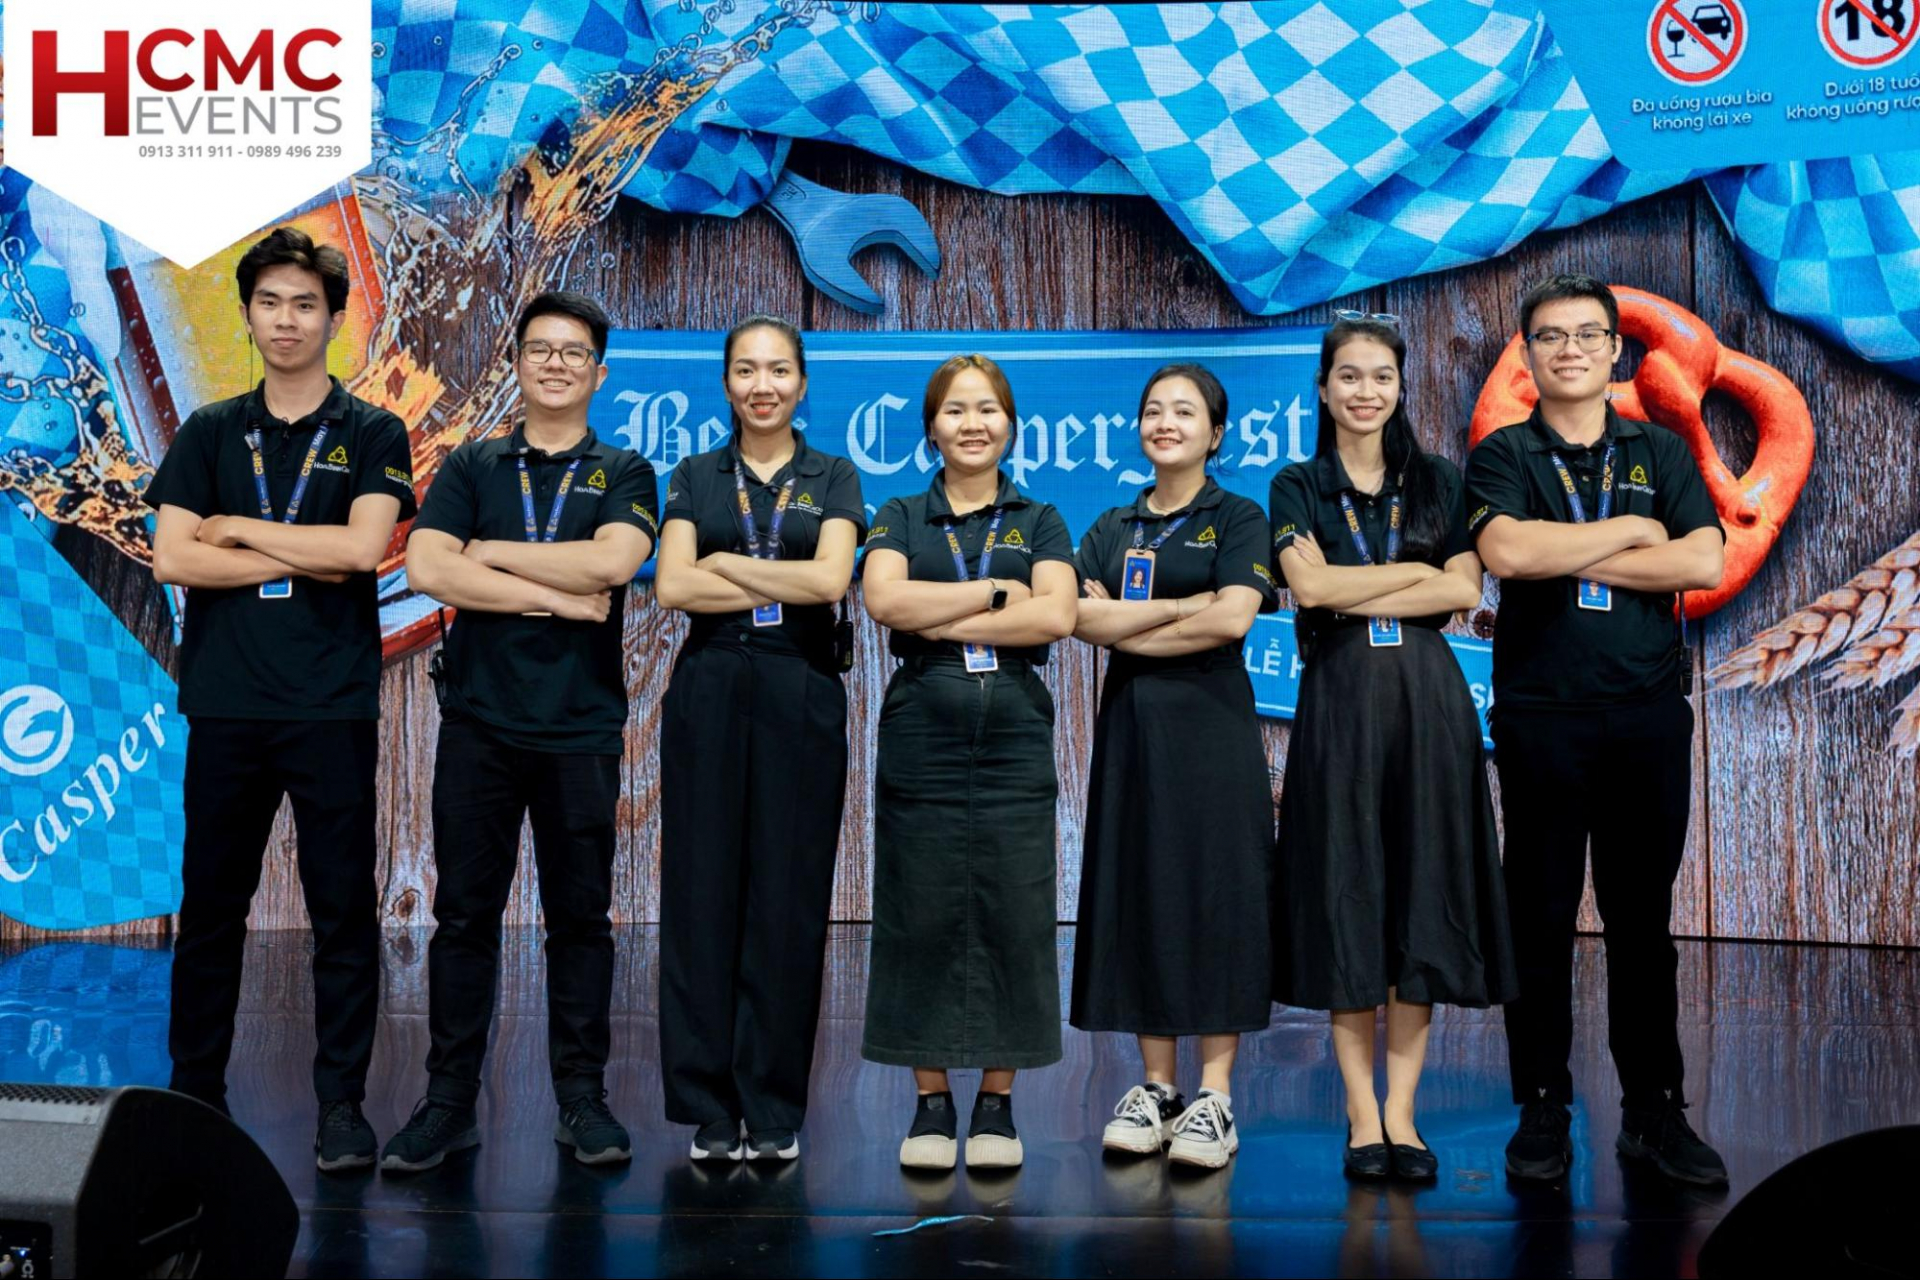 HCMC Events sở hữu đội ngũ nhân sự có chuyên môn cao và được đào tạo quy trình bài bản